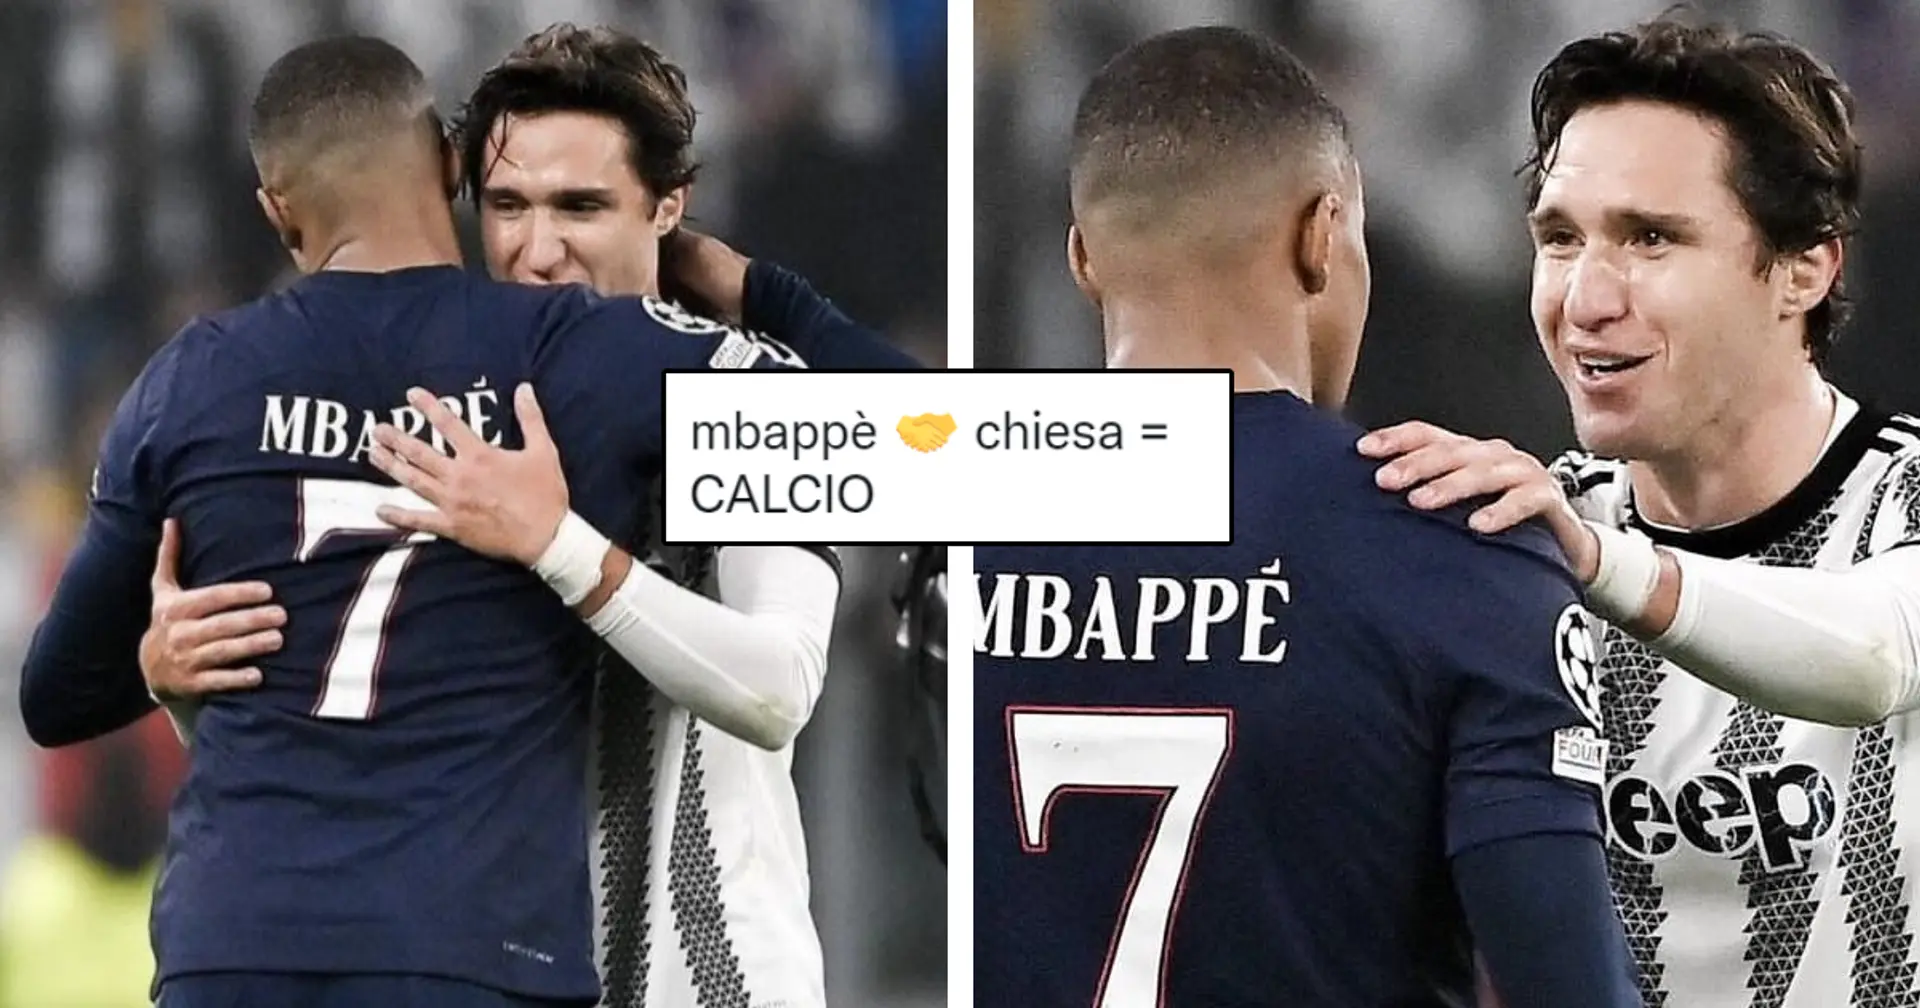 "Immaginateli insieme": Mbappé dedica un messaggio a Chiesa, l'abbraccio dopo Juve-PSG fa impazzire i tifosi 